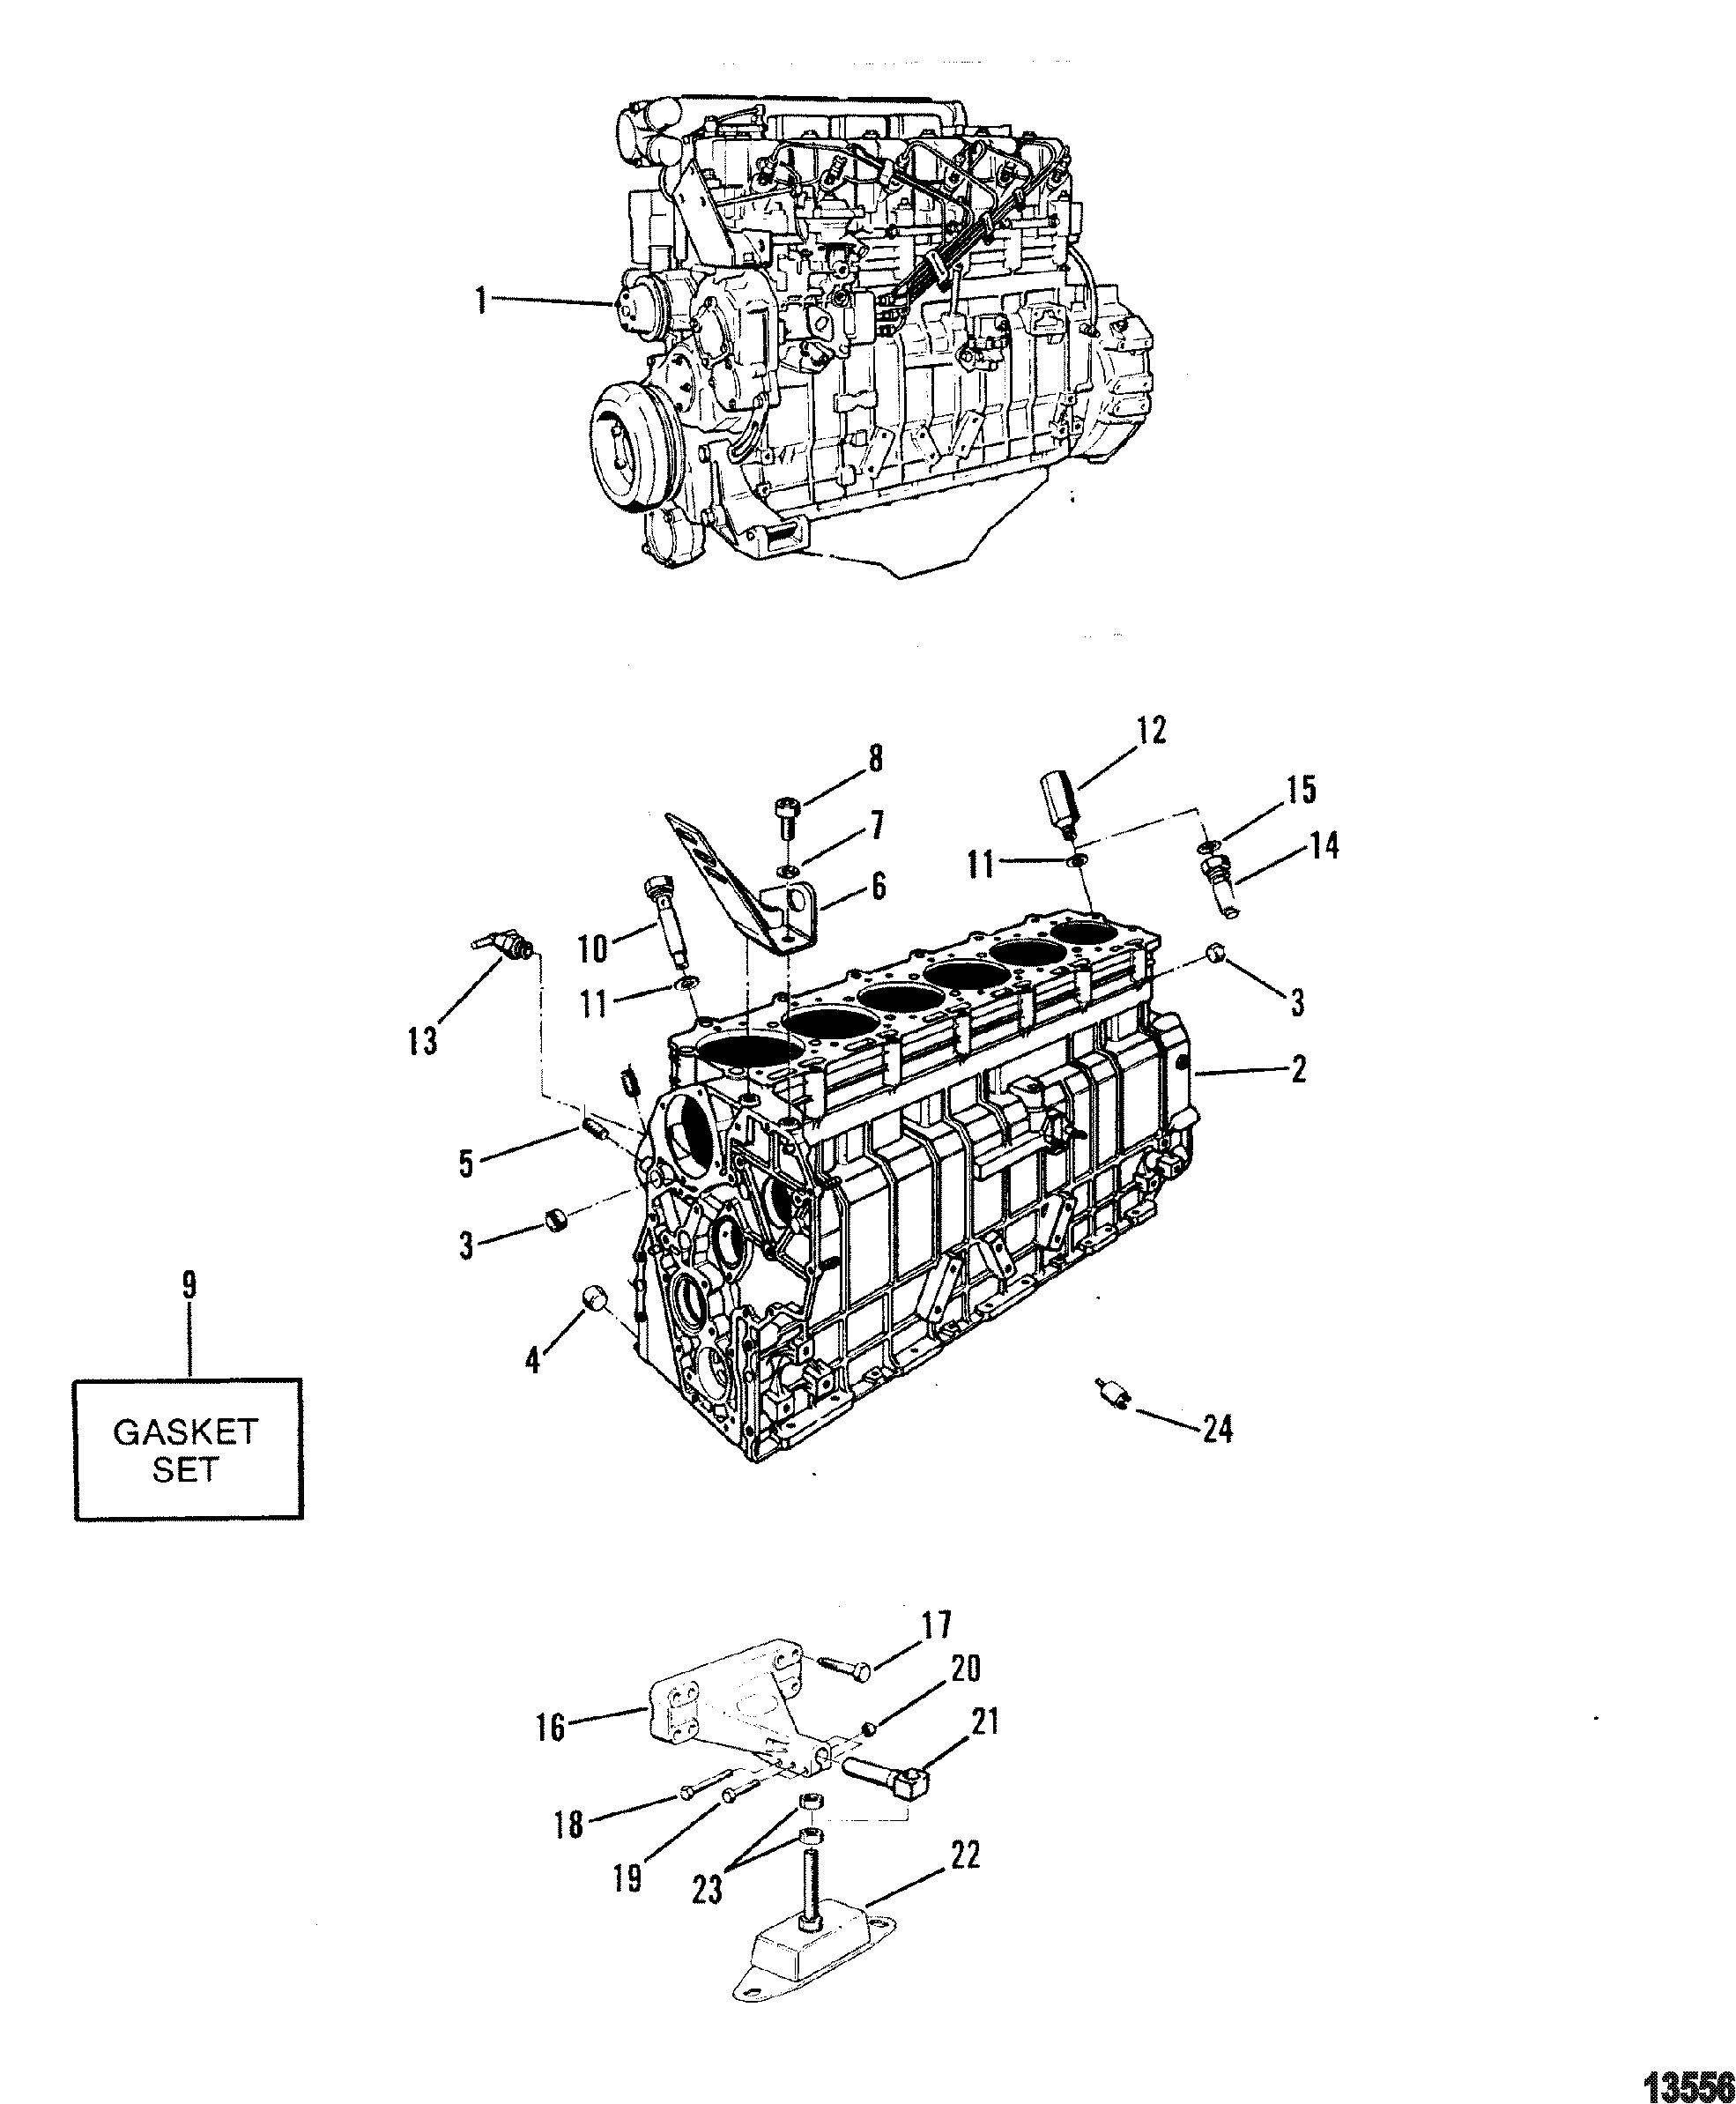 Engine/Cylinder Block